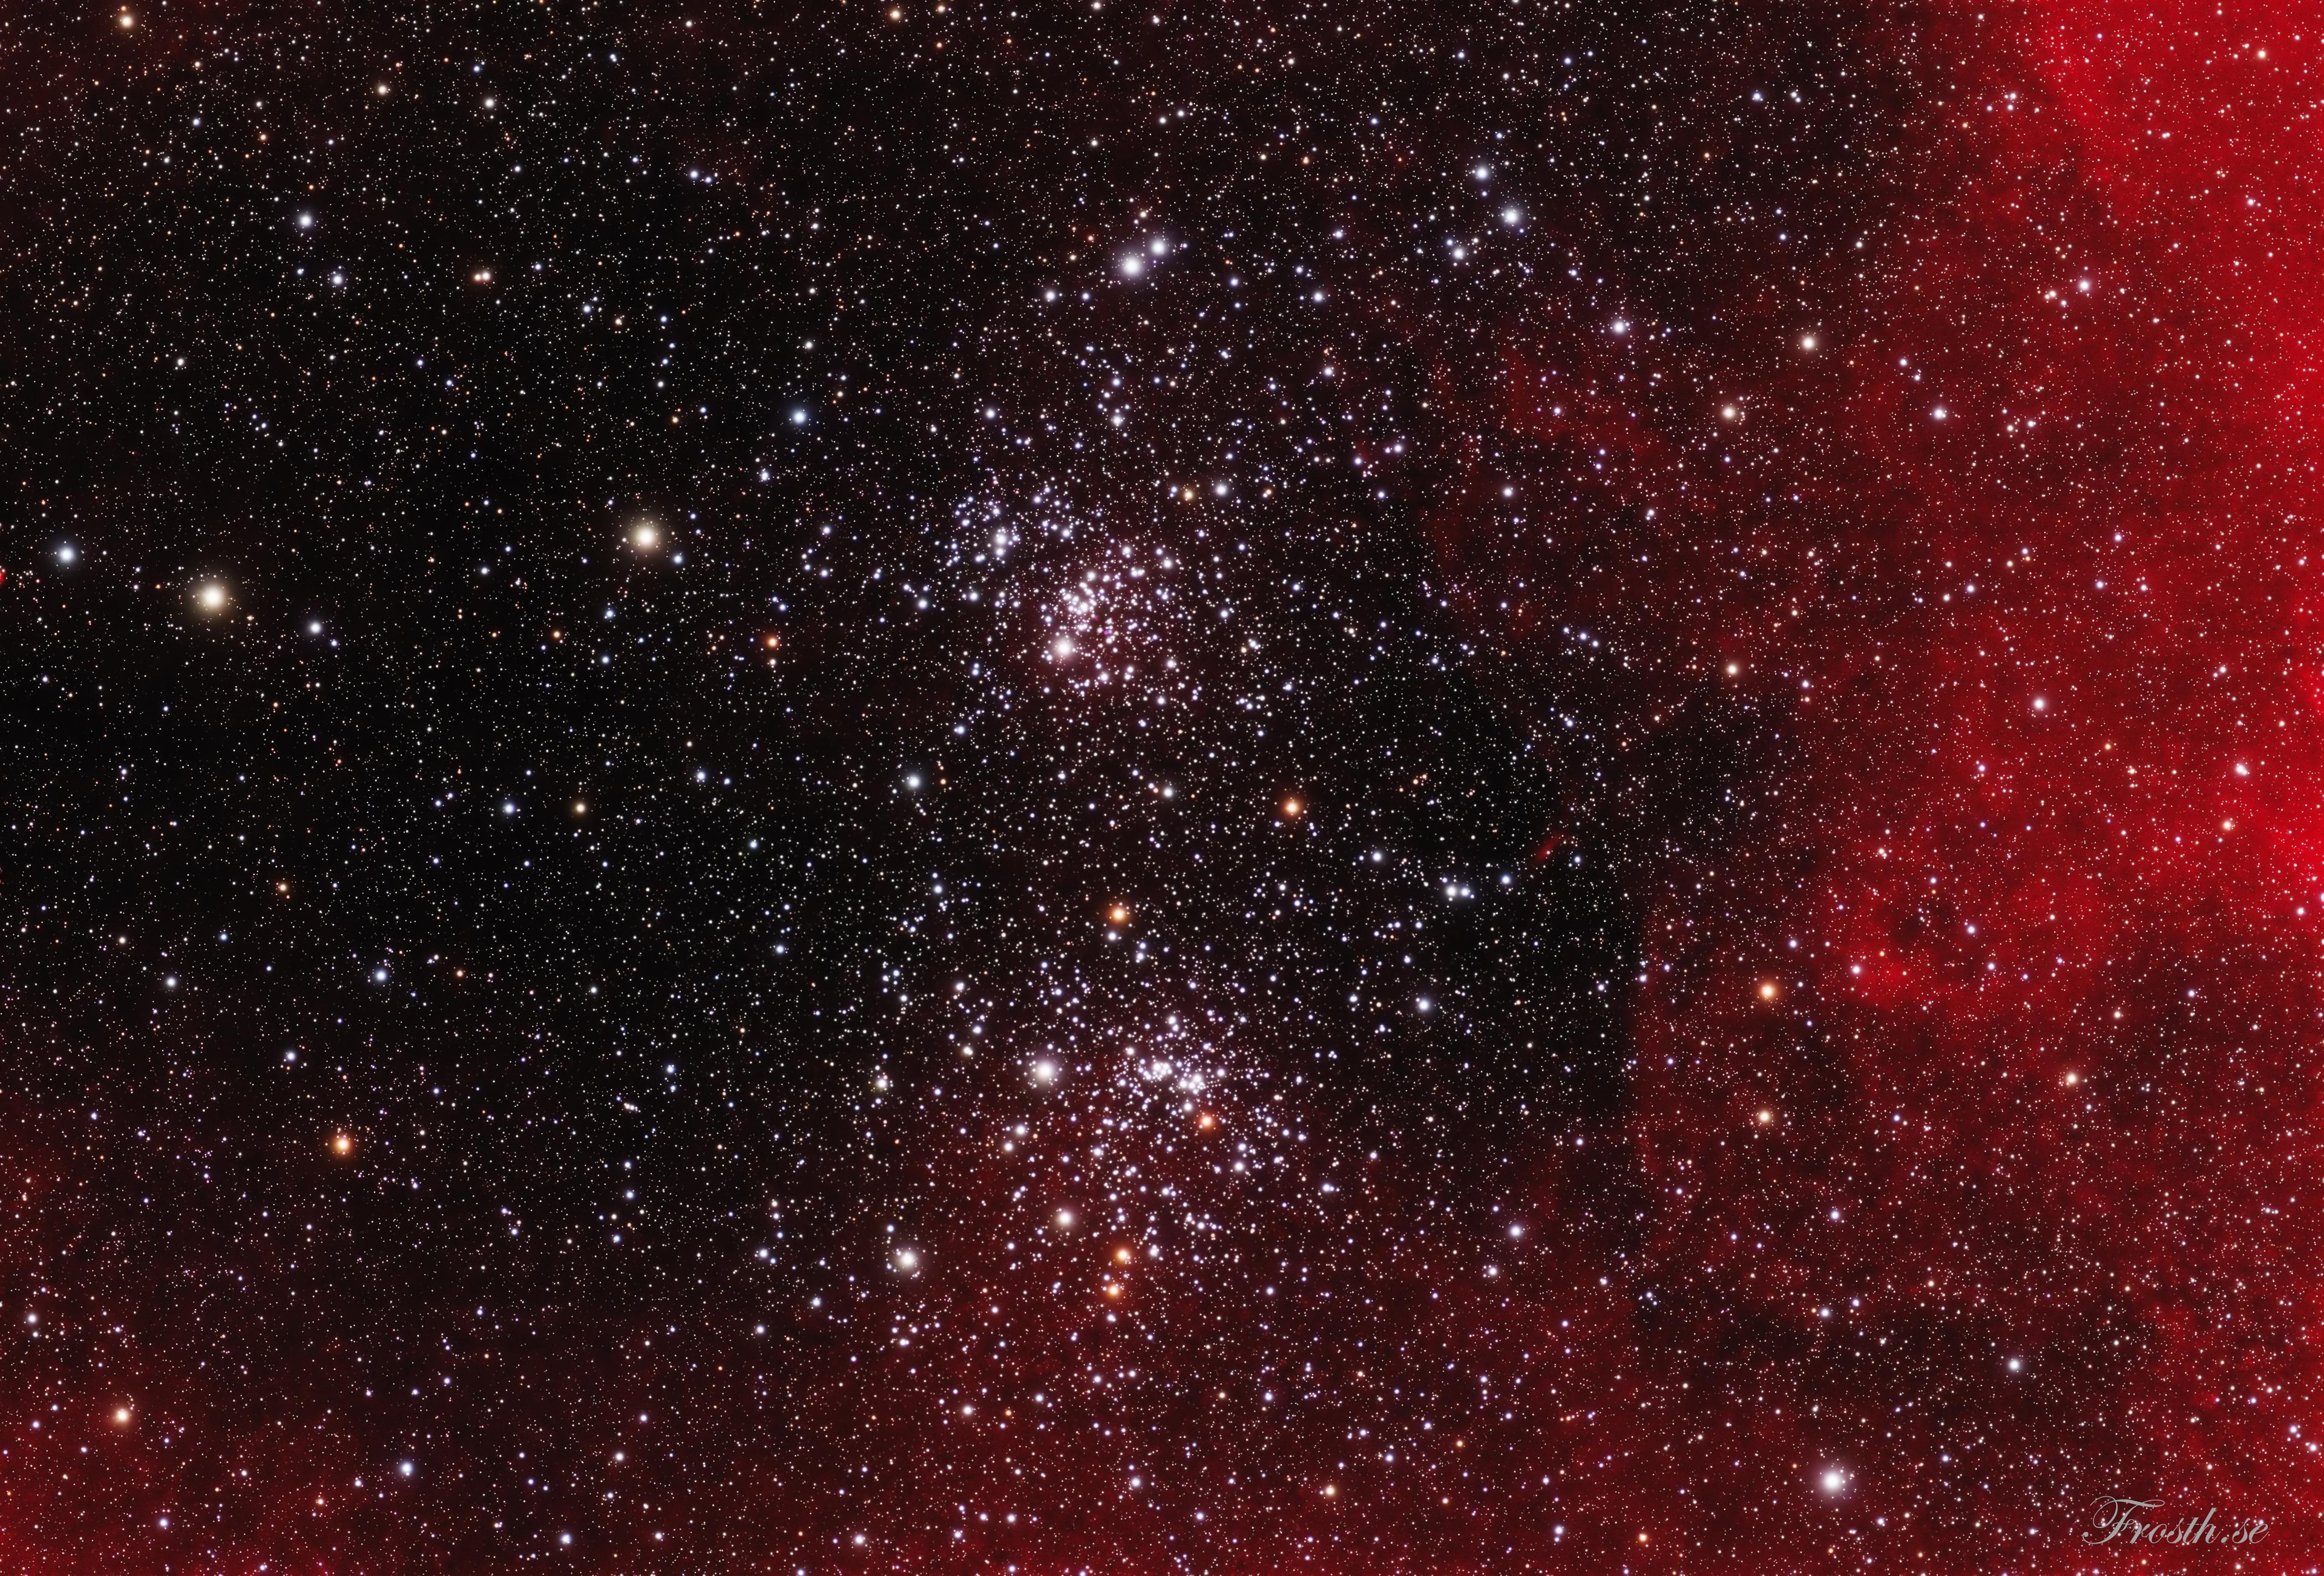 عنقودان نجميان مفتوحان يذخران بالنجوم وحولهما الكثير من النجوم الأخرى كذلك. يظهر امتداد سديمي محمرّ على يمين الصورة.